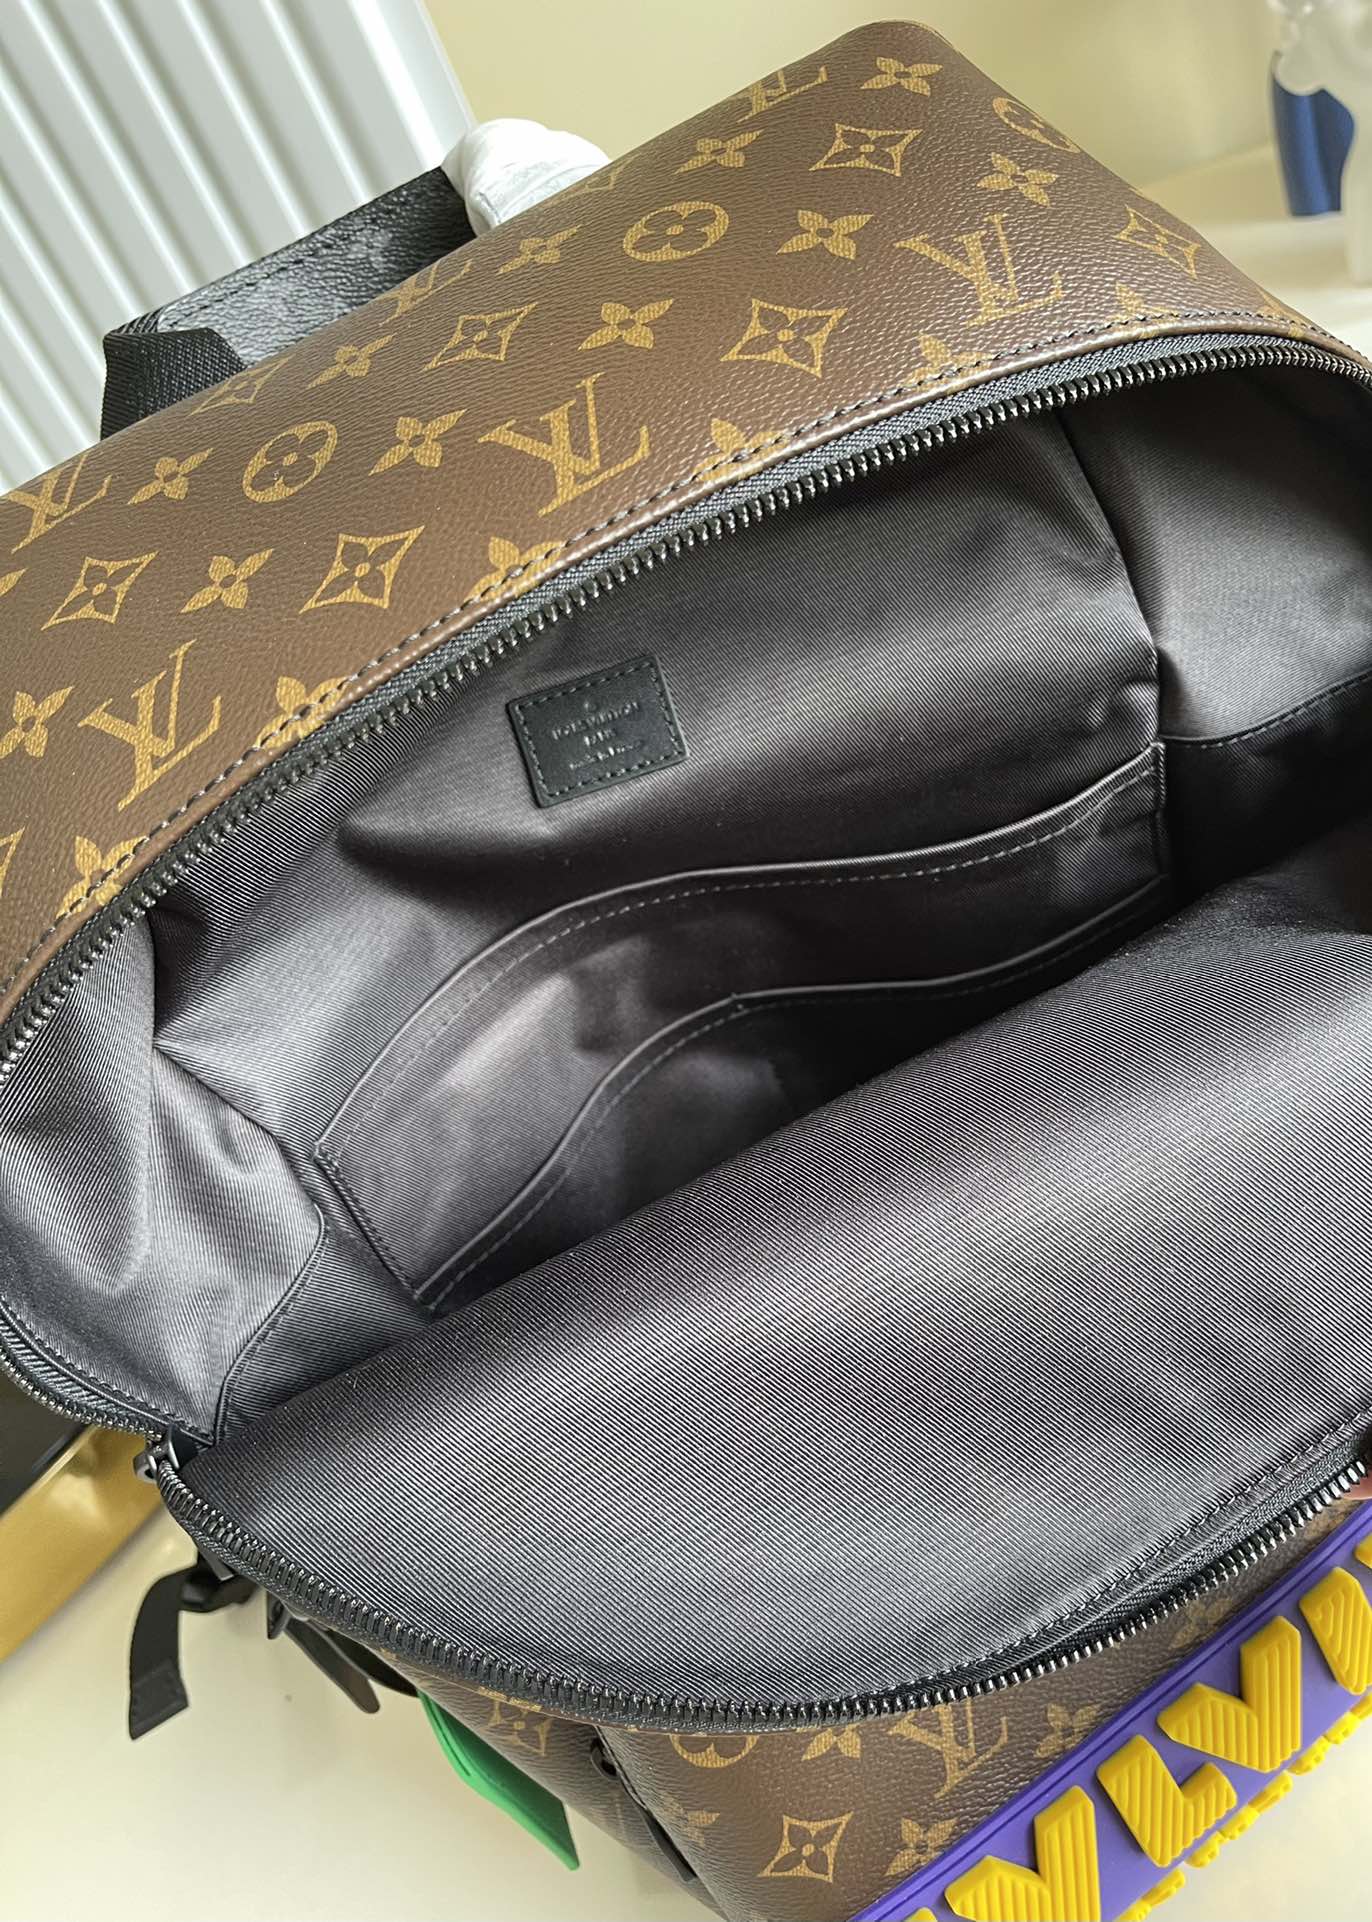 LU Backpack bag